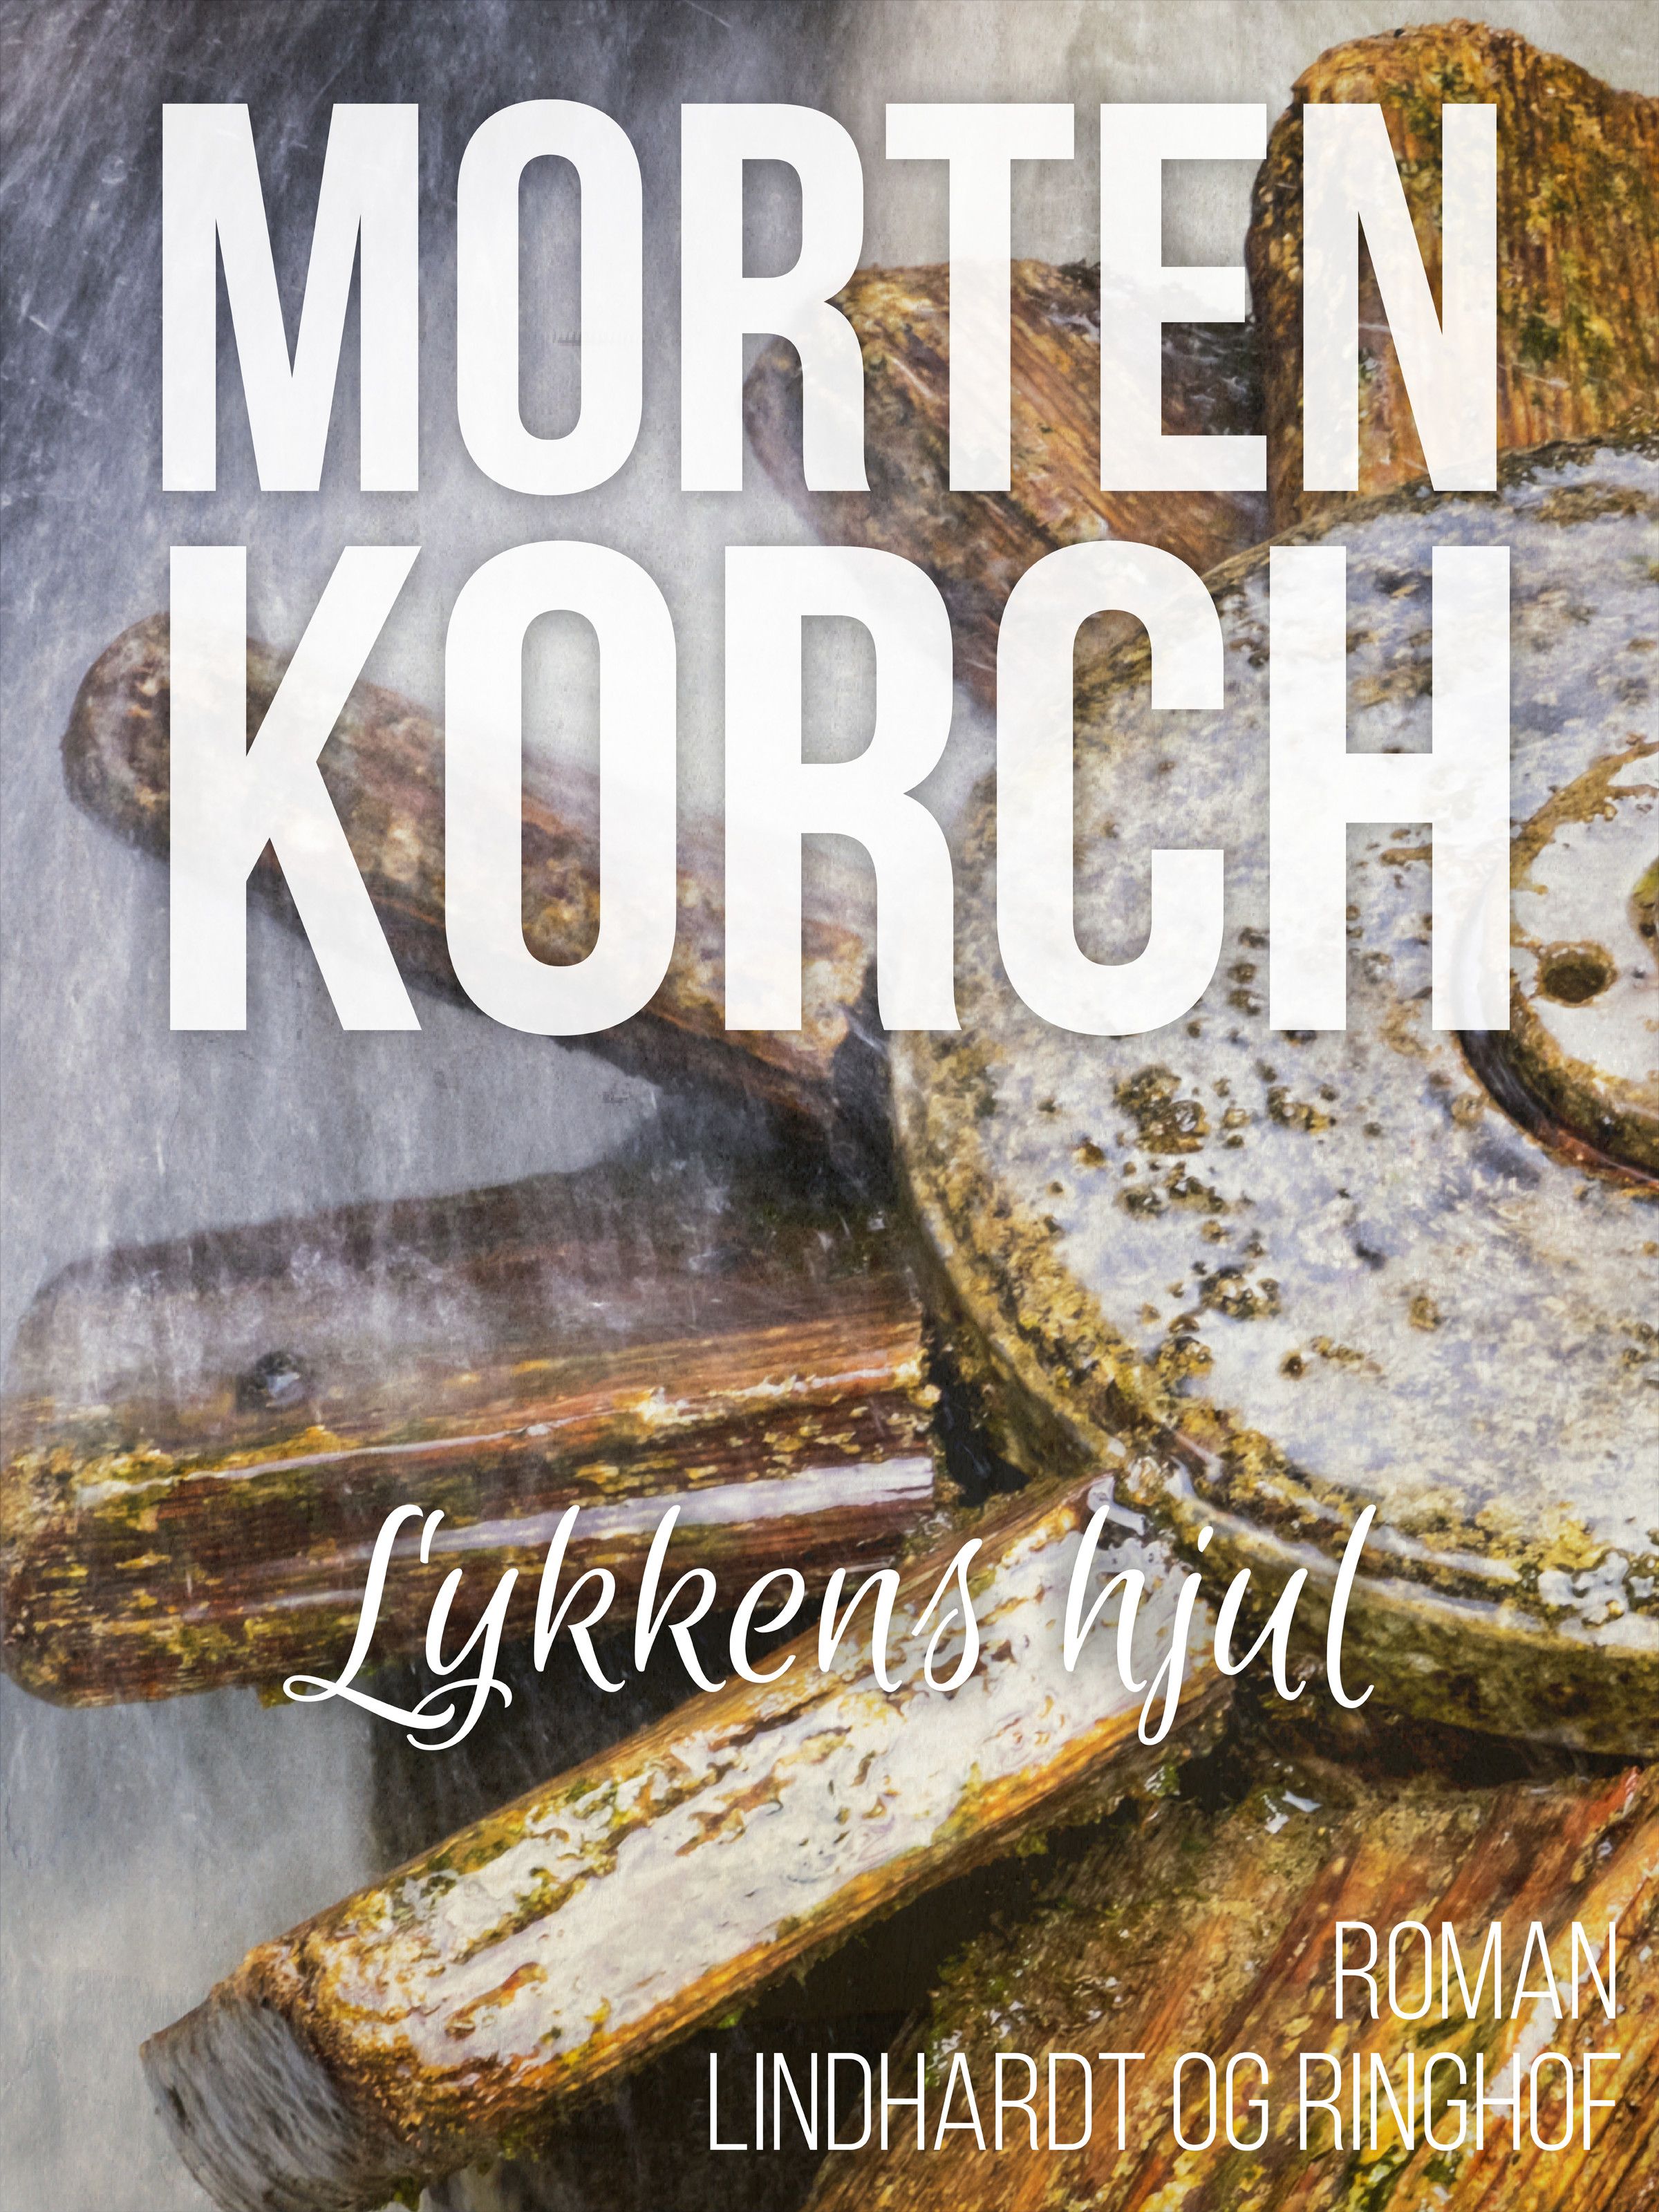 Lykkens hjul, ljudbok av Morten Korch